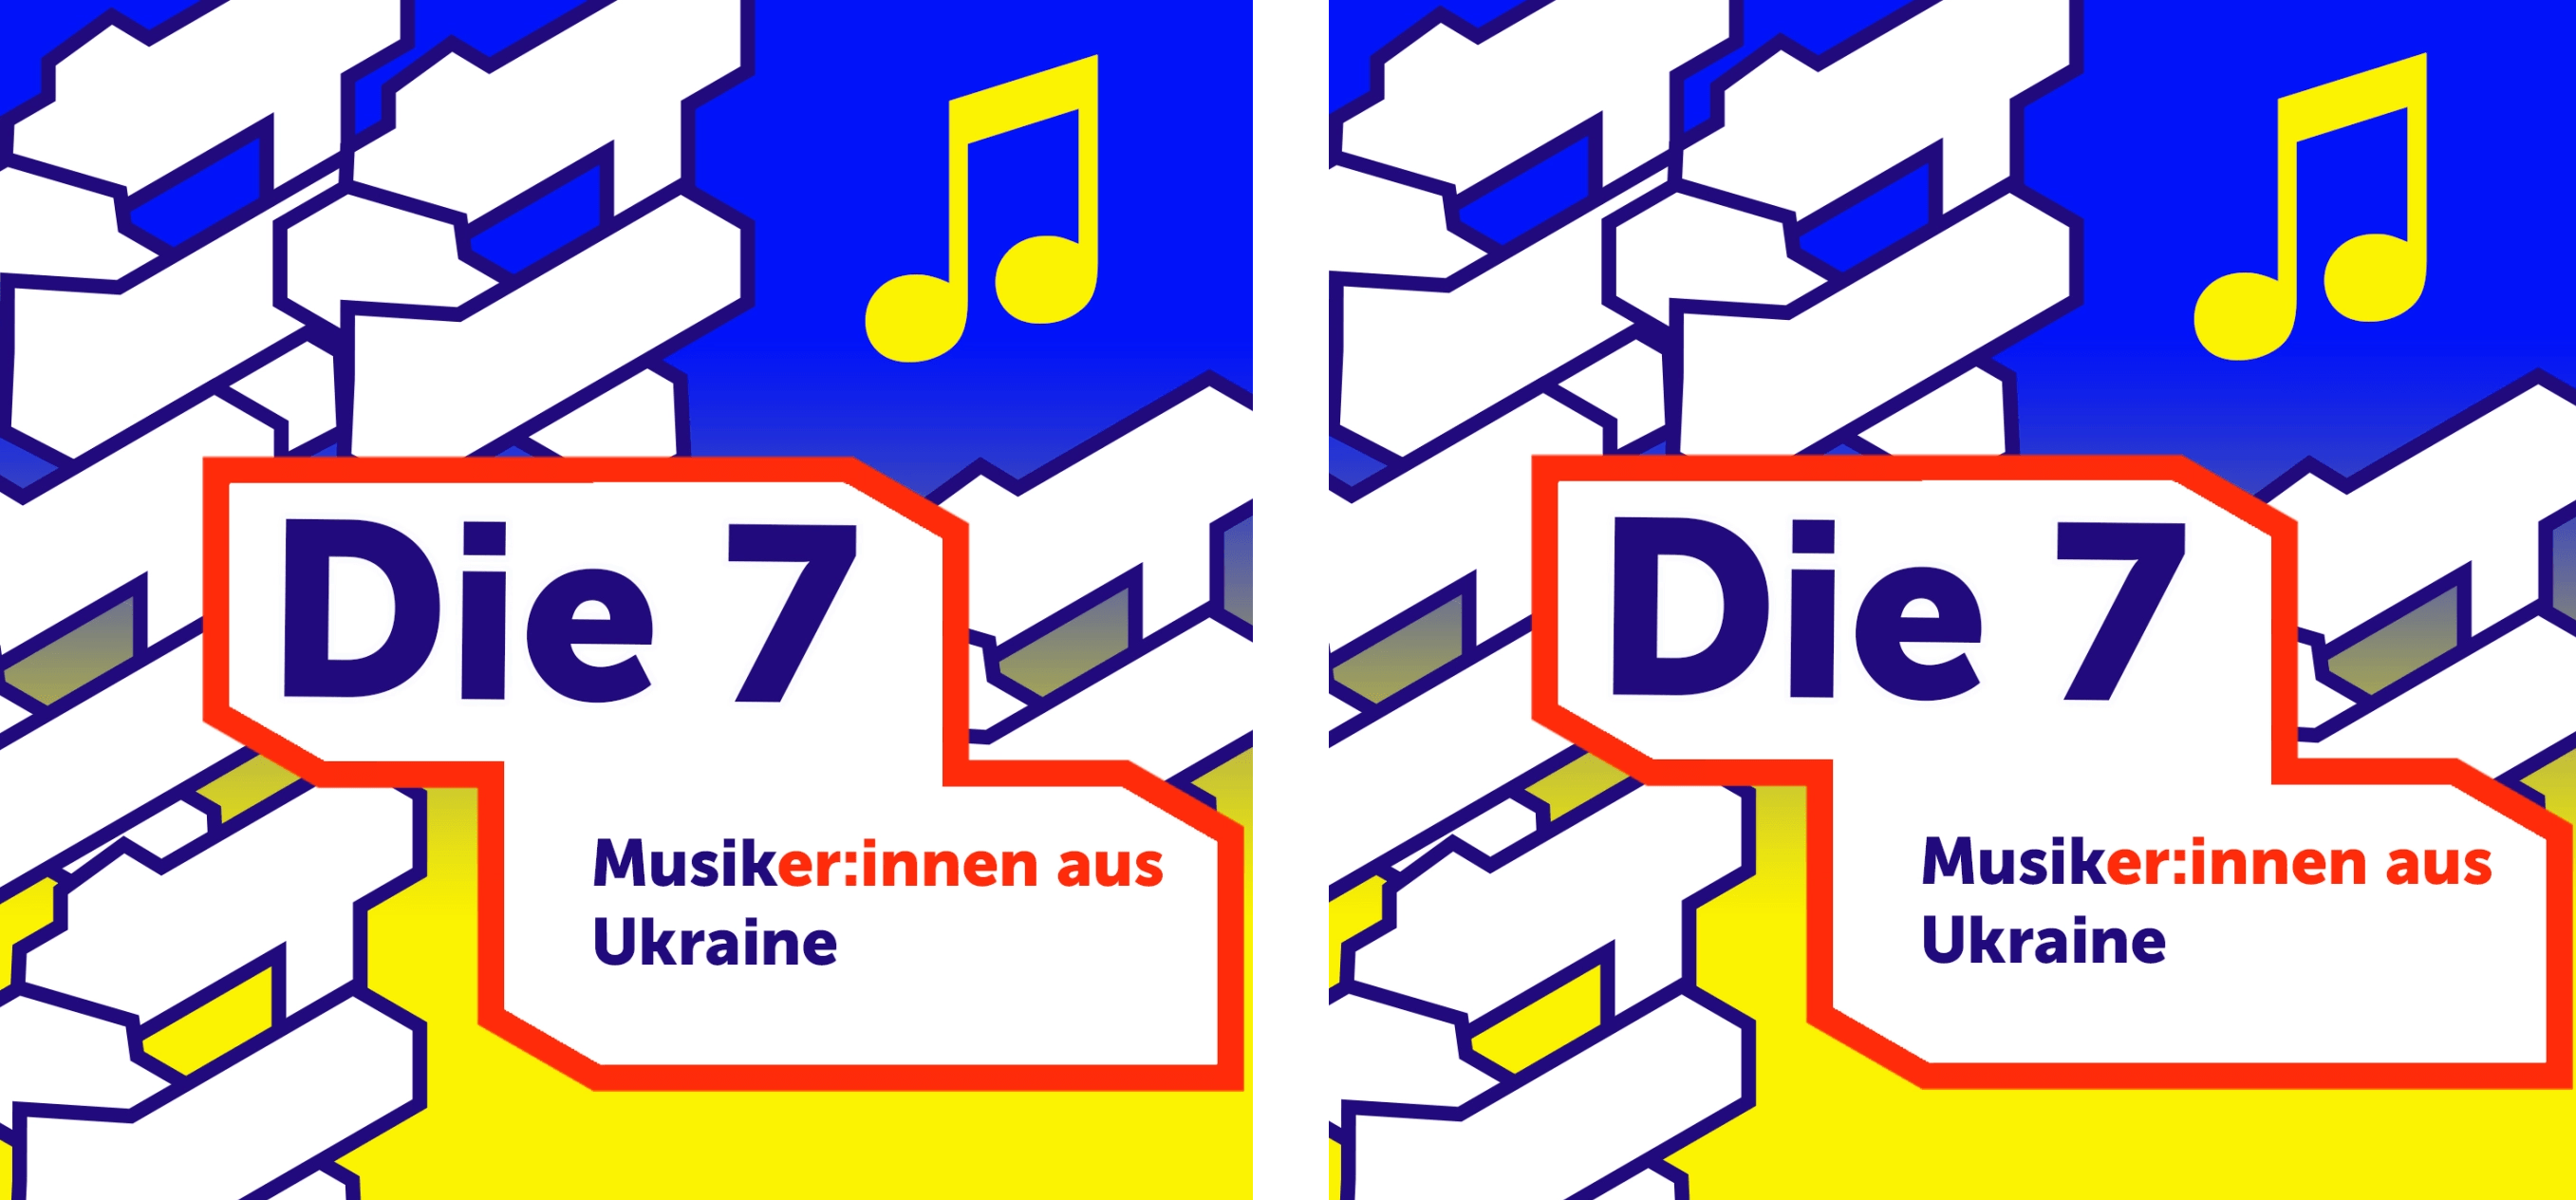 Die andere Mög­lich­keit der Unter­stüt­zung für die Ukraine: Spo­tify-Abbone­ment ukrai­ni­scher Musiker_innen